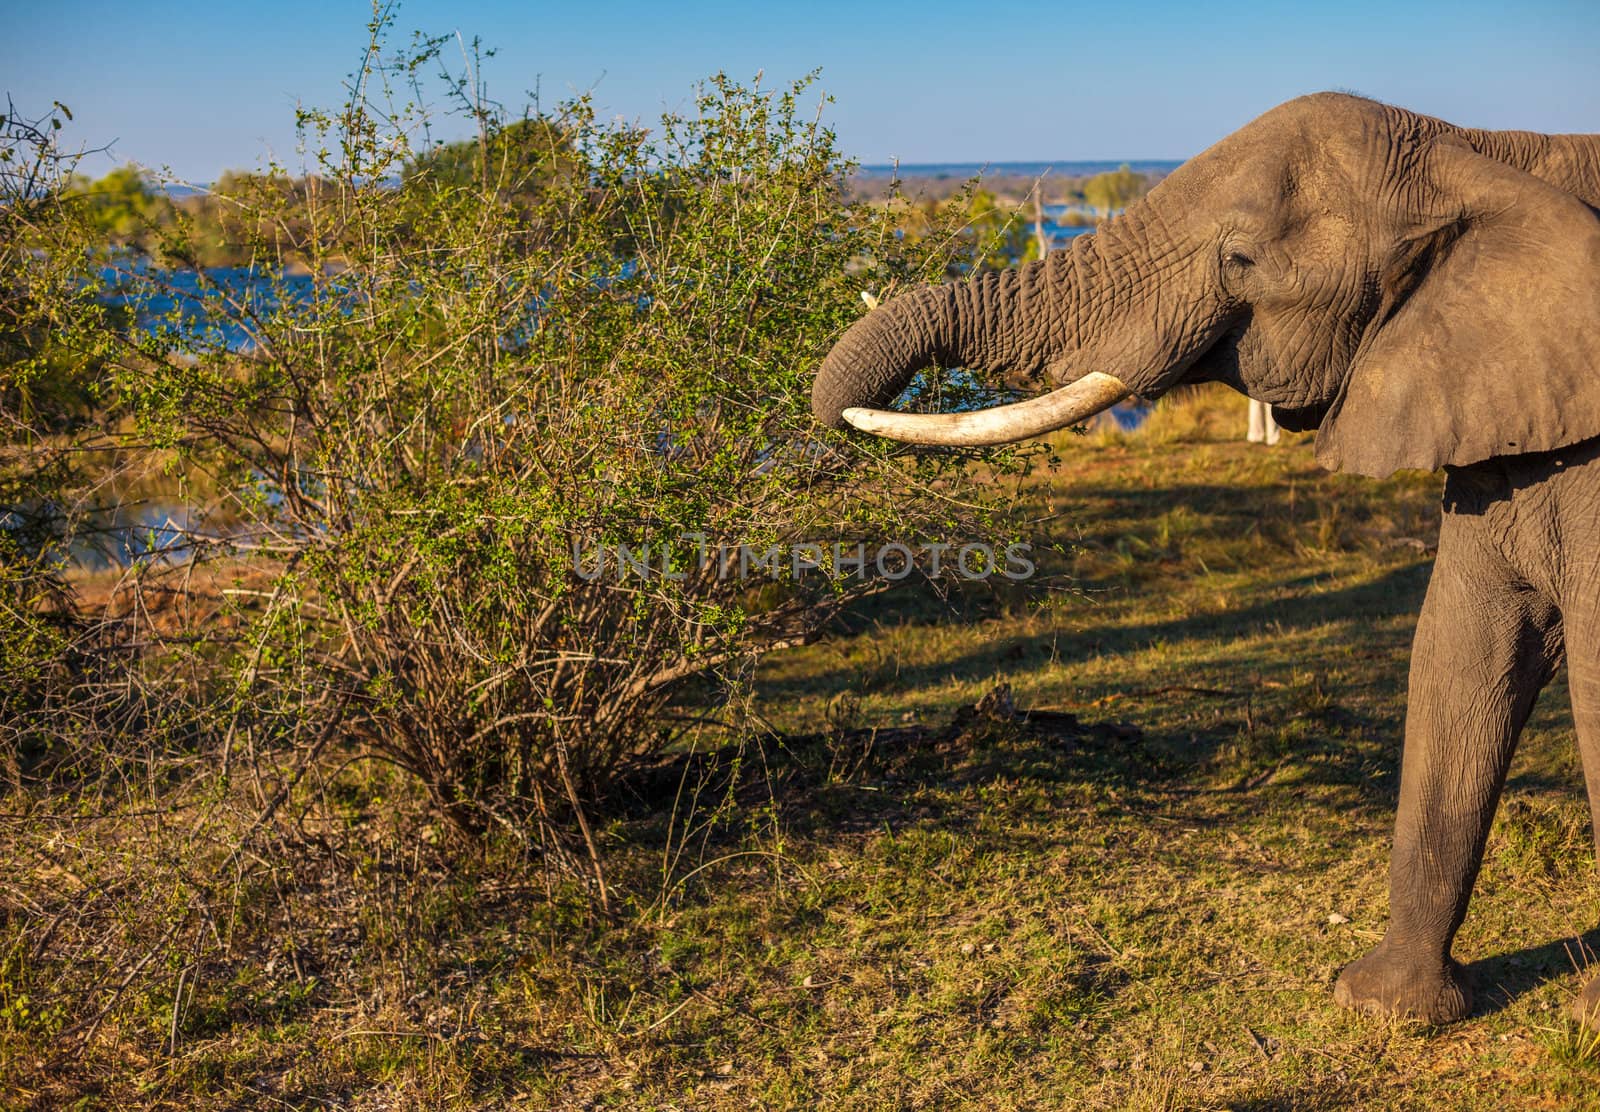 Elephant eating by edan